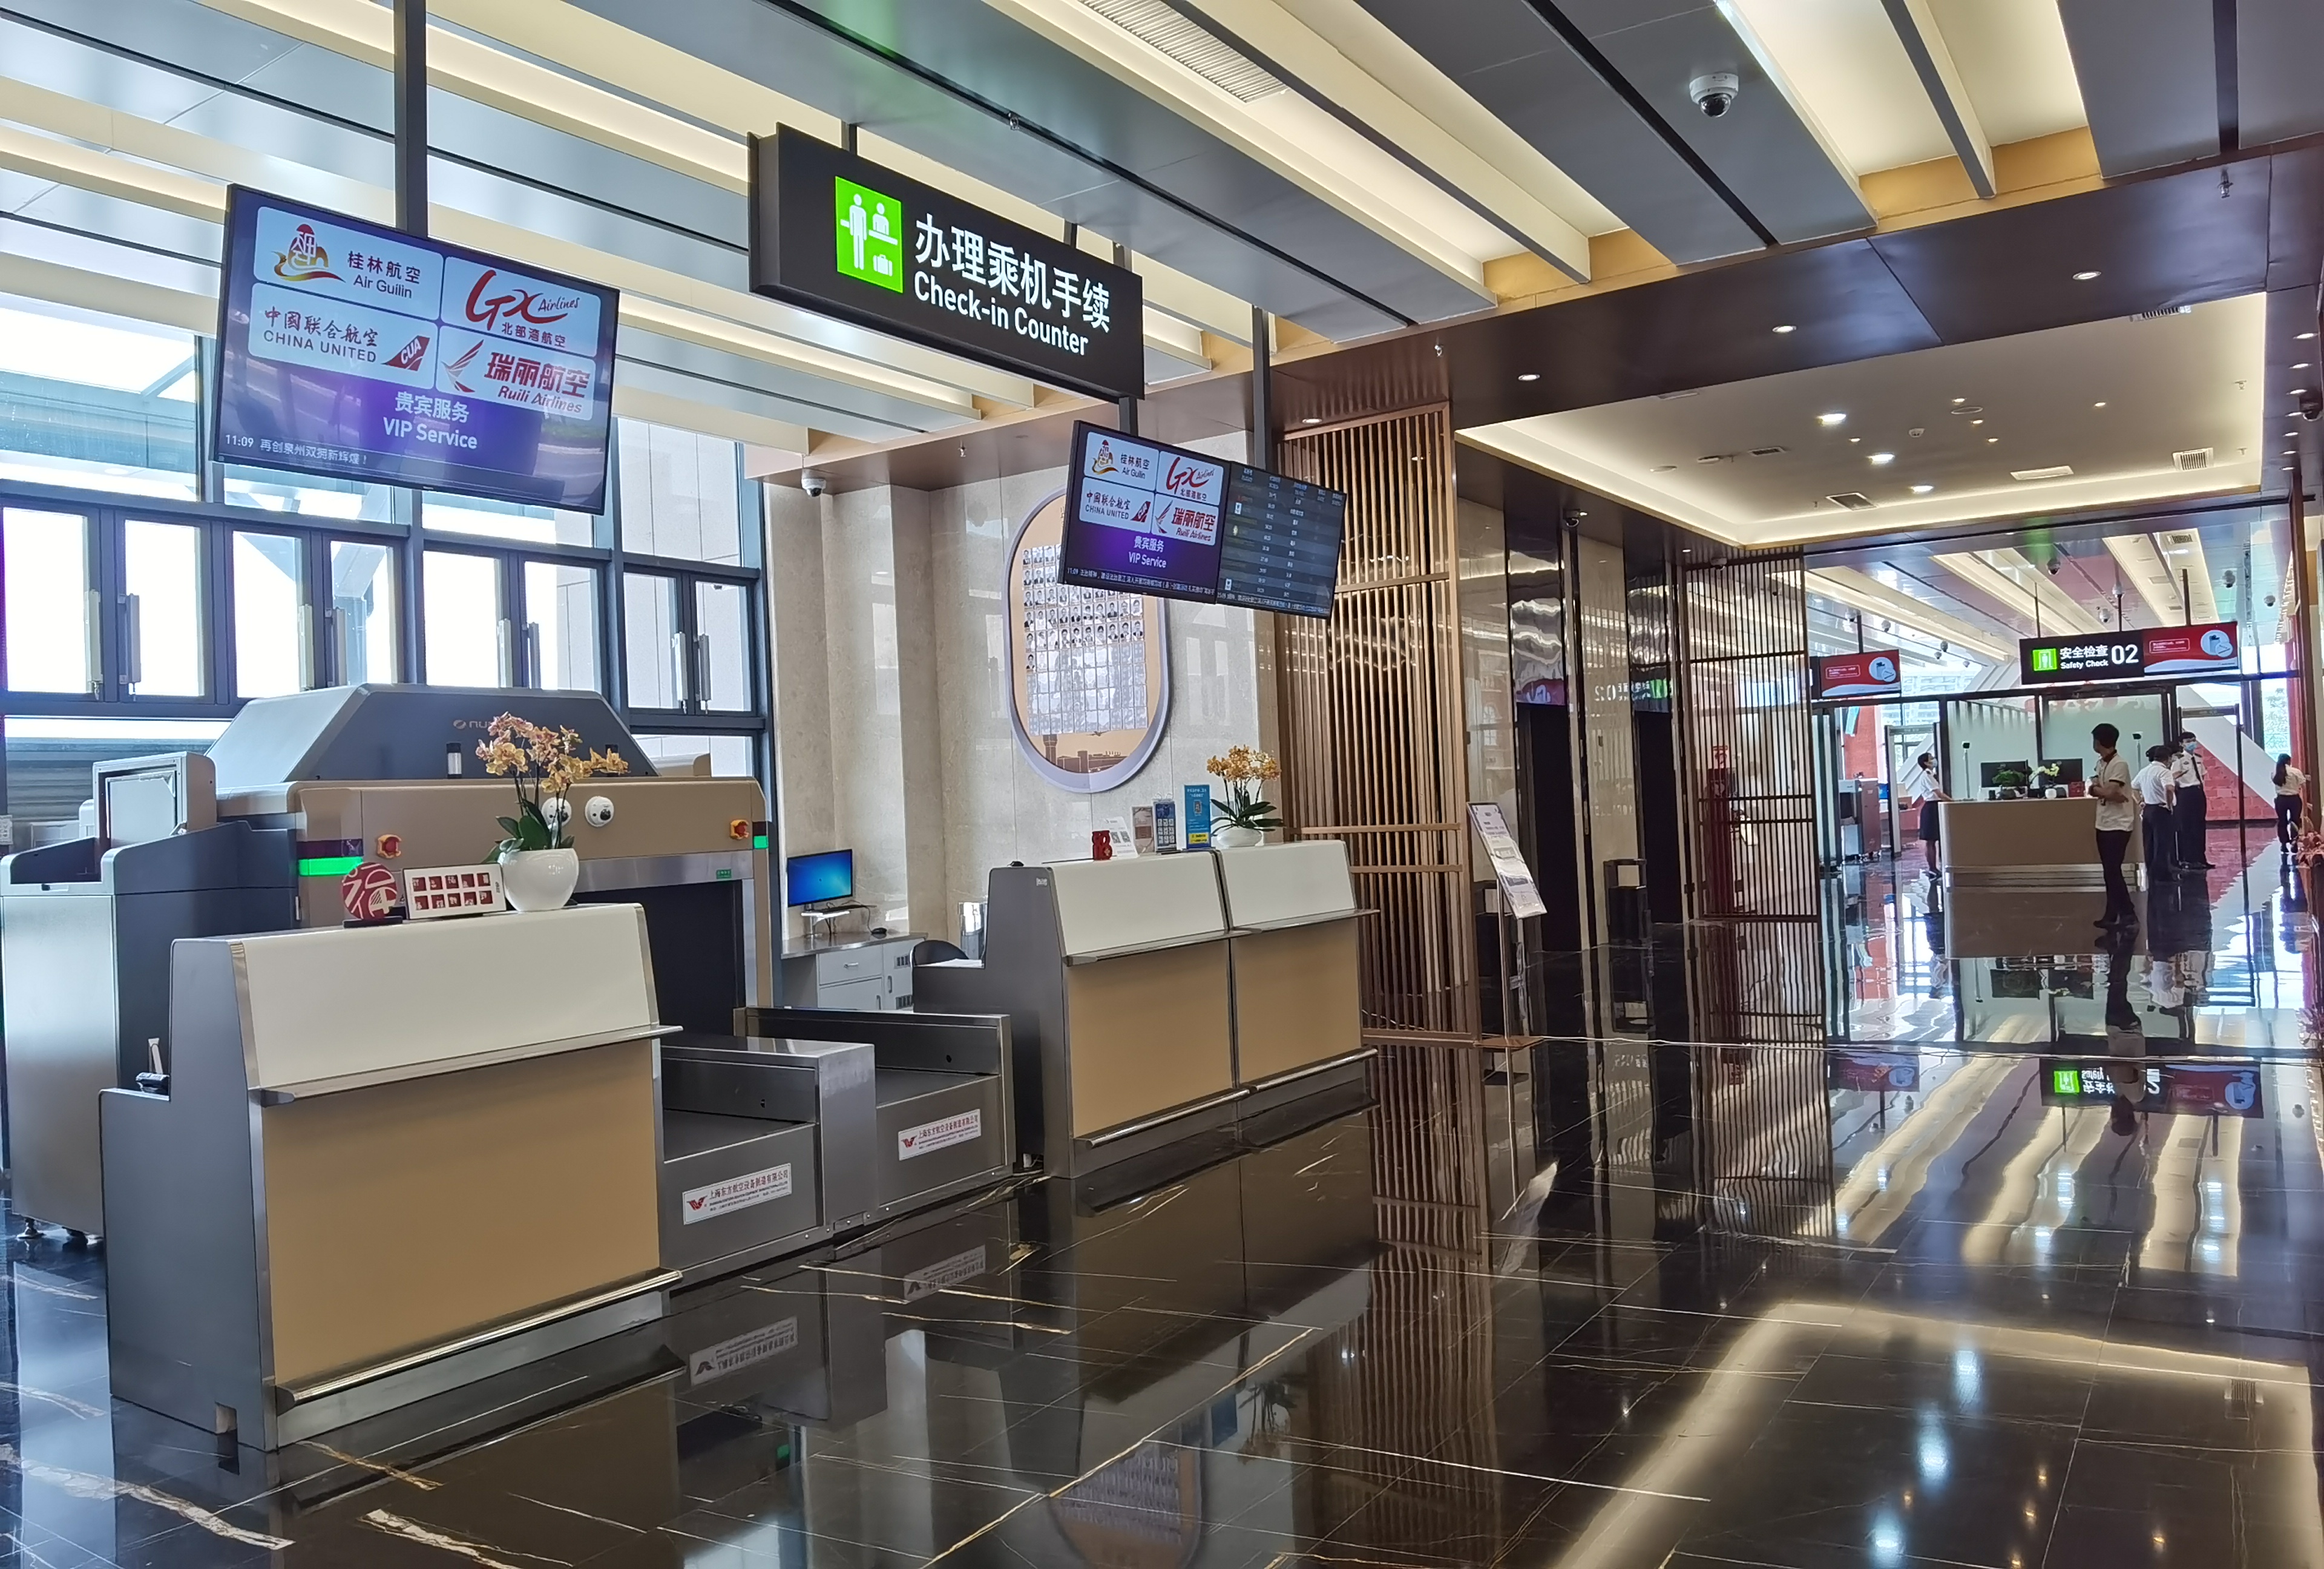 泉州晋江国际机场空港商旅大厦投入运营